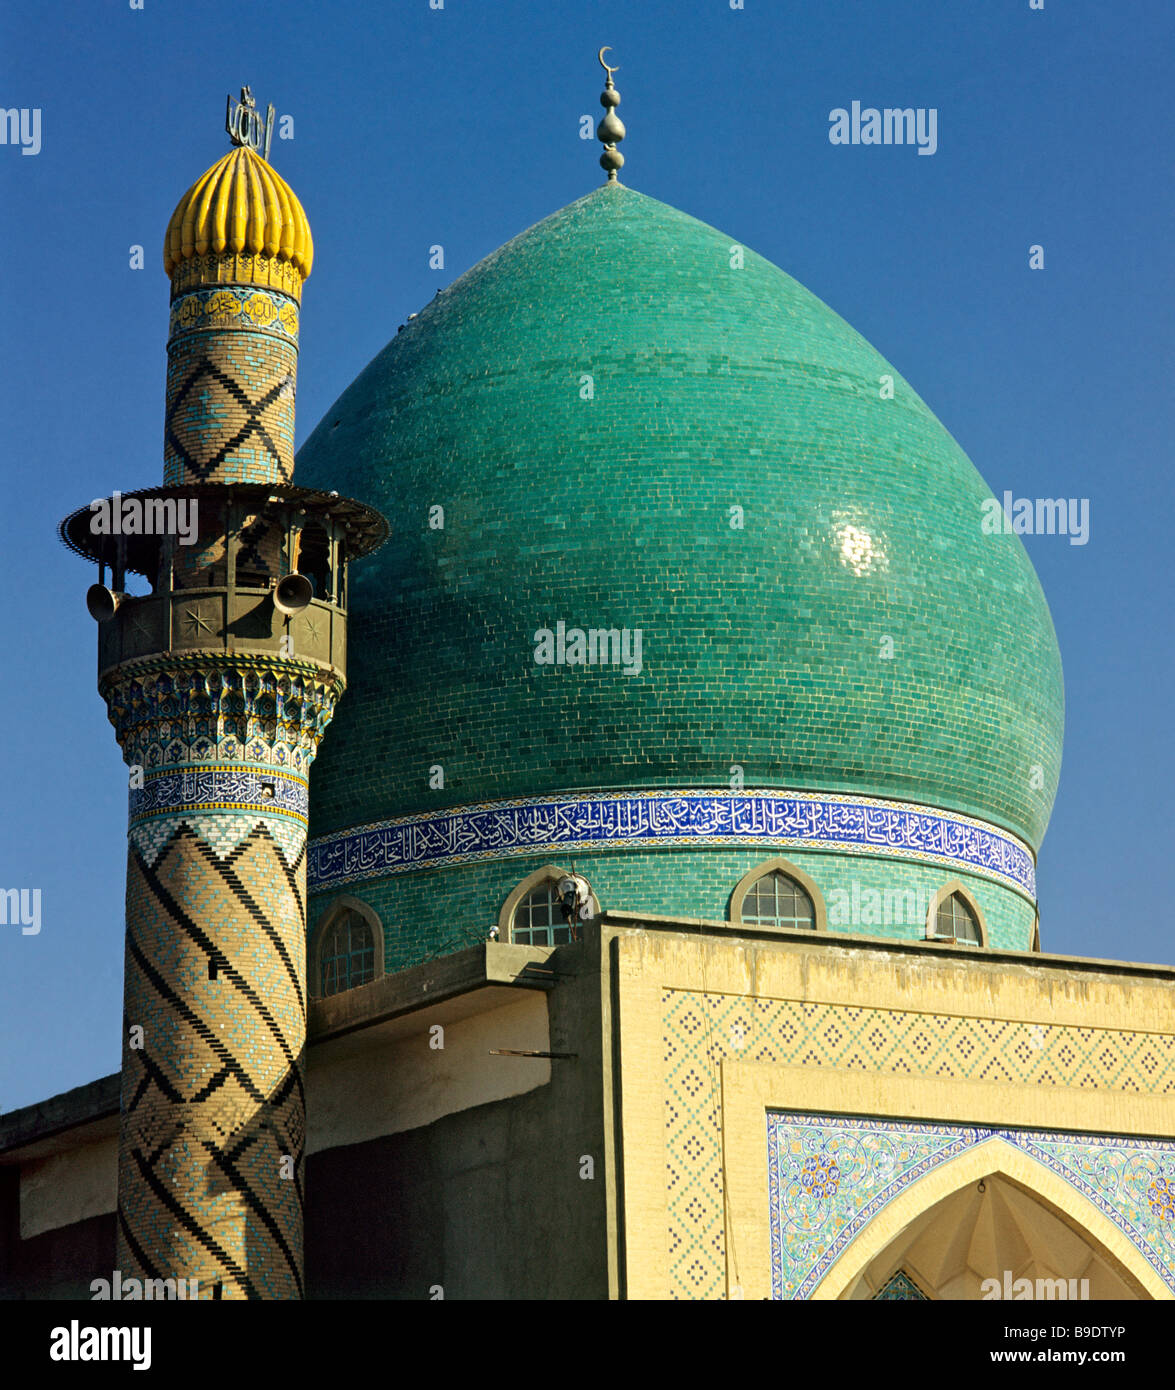 Un dôme vert mosquée, minaret tower, Bagdad, Iraq, Middle East Banque D'Images